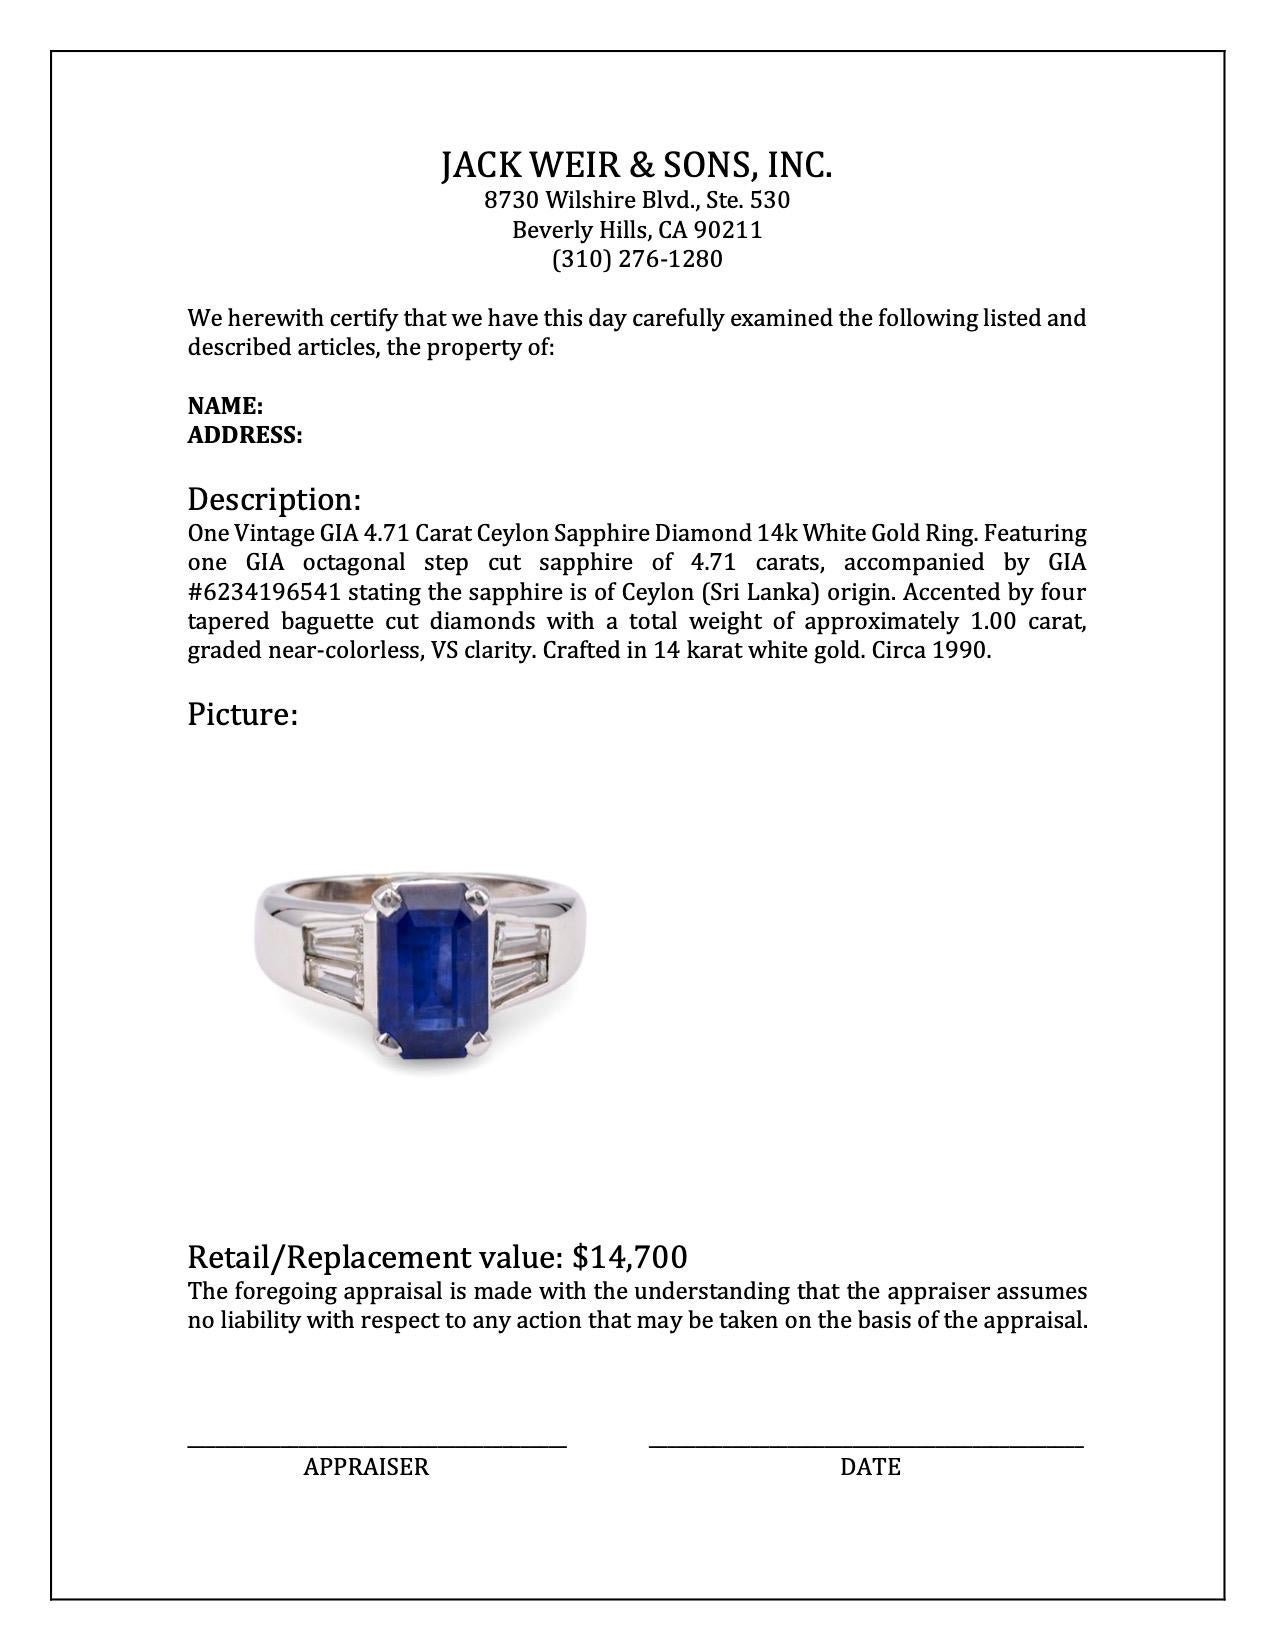 Vintage GIA 4.71 Carat Ceylon Sapphire Diamond 14k White Gold Ring For Sale 1